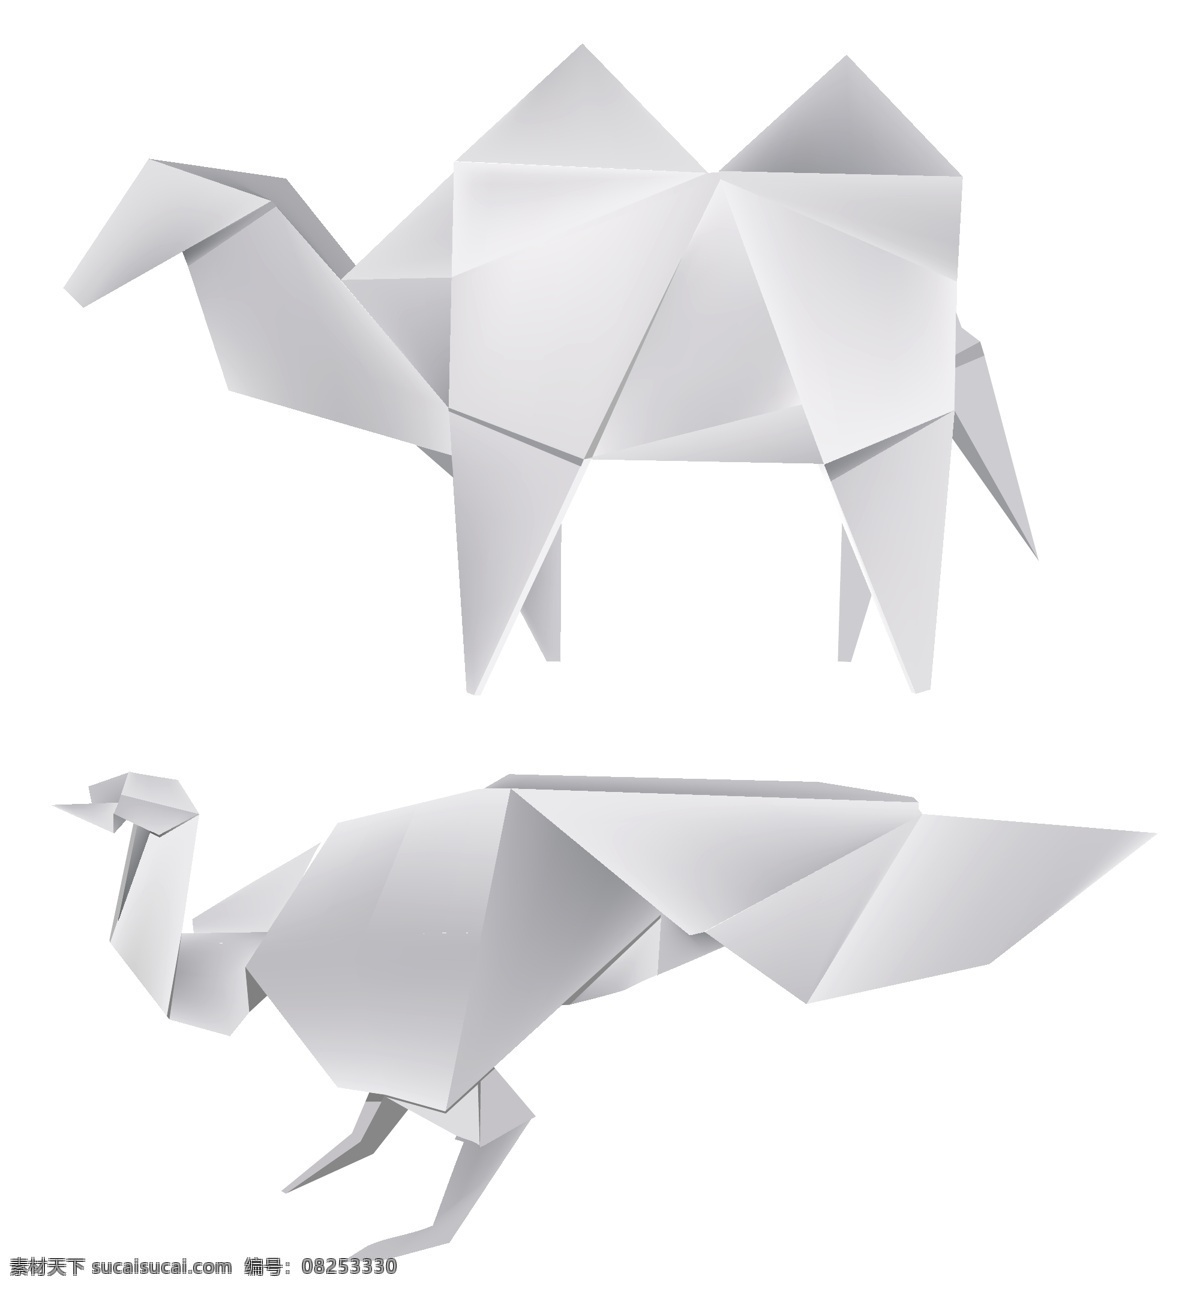 动物 轮廓 折纸 矢量 卡通恐龙 矢量素材 动物轮廓折纸 折纸卡通动物 矢量图